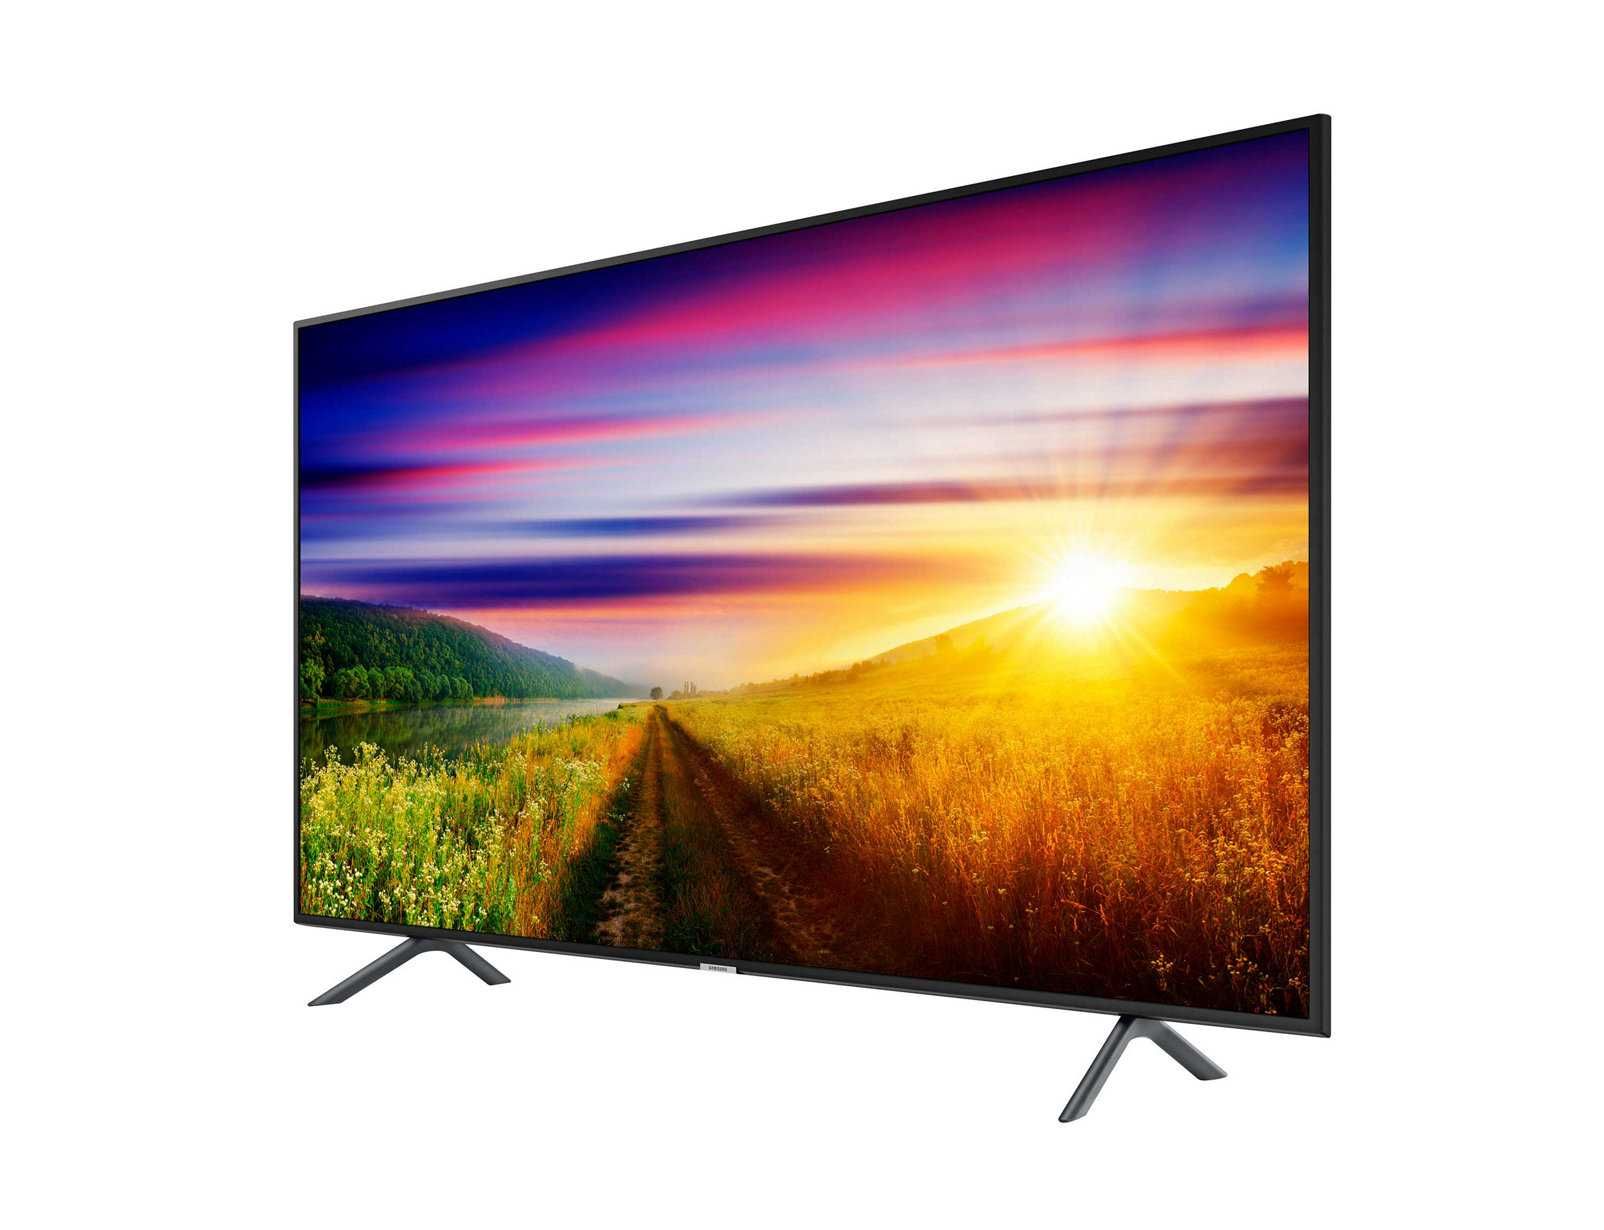 Телевизор Samsung 43 диагональ супер цена гарантия качество.